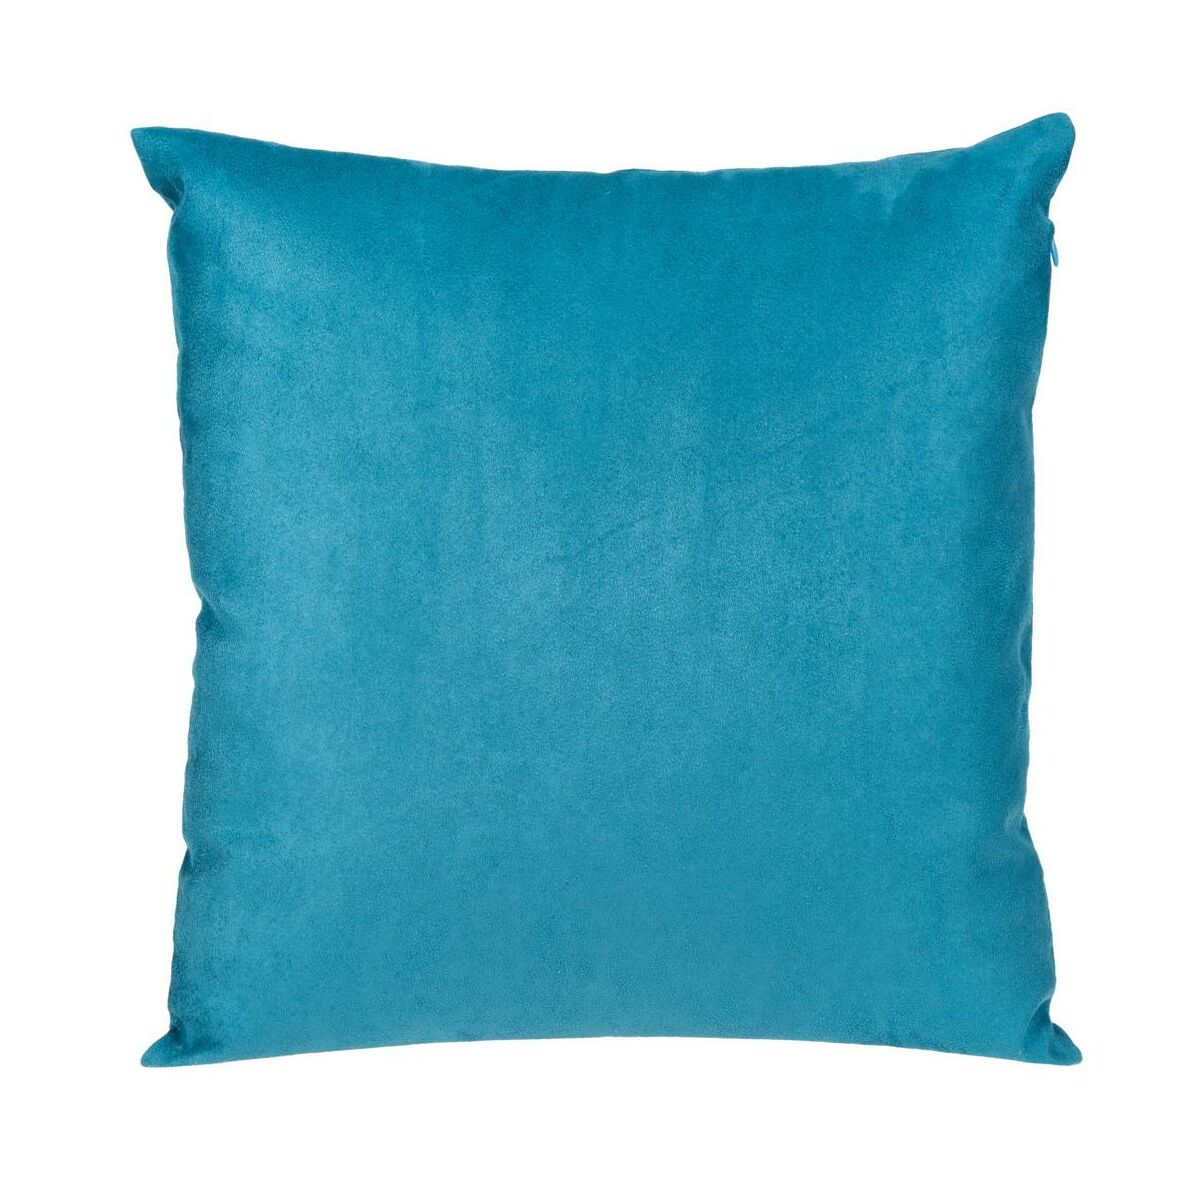 Poduszka Suede niebieska 45 x 45 cm Inspire